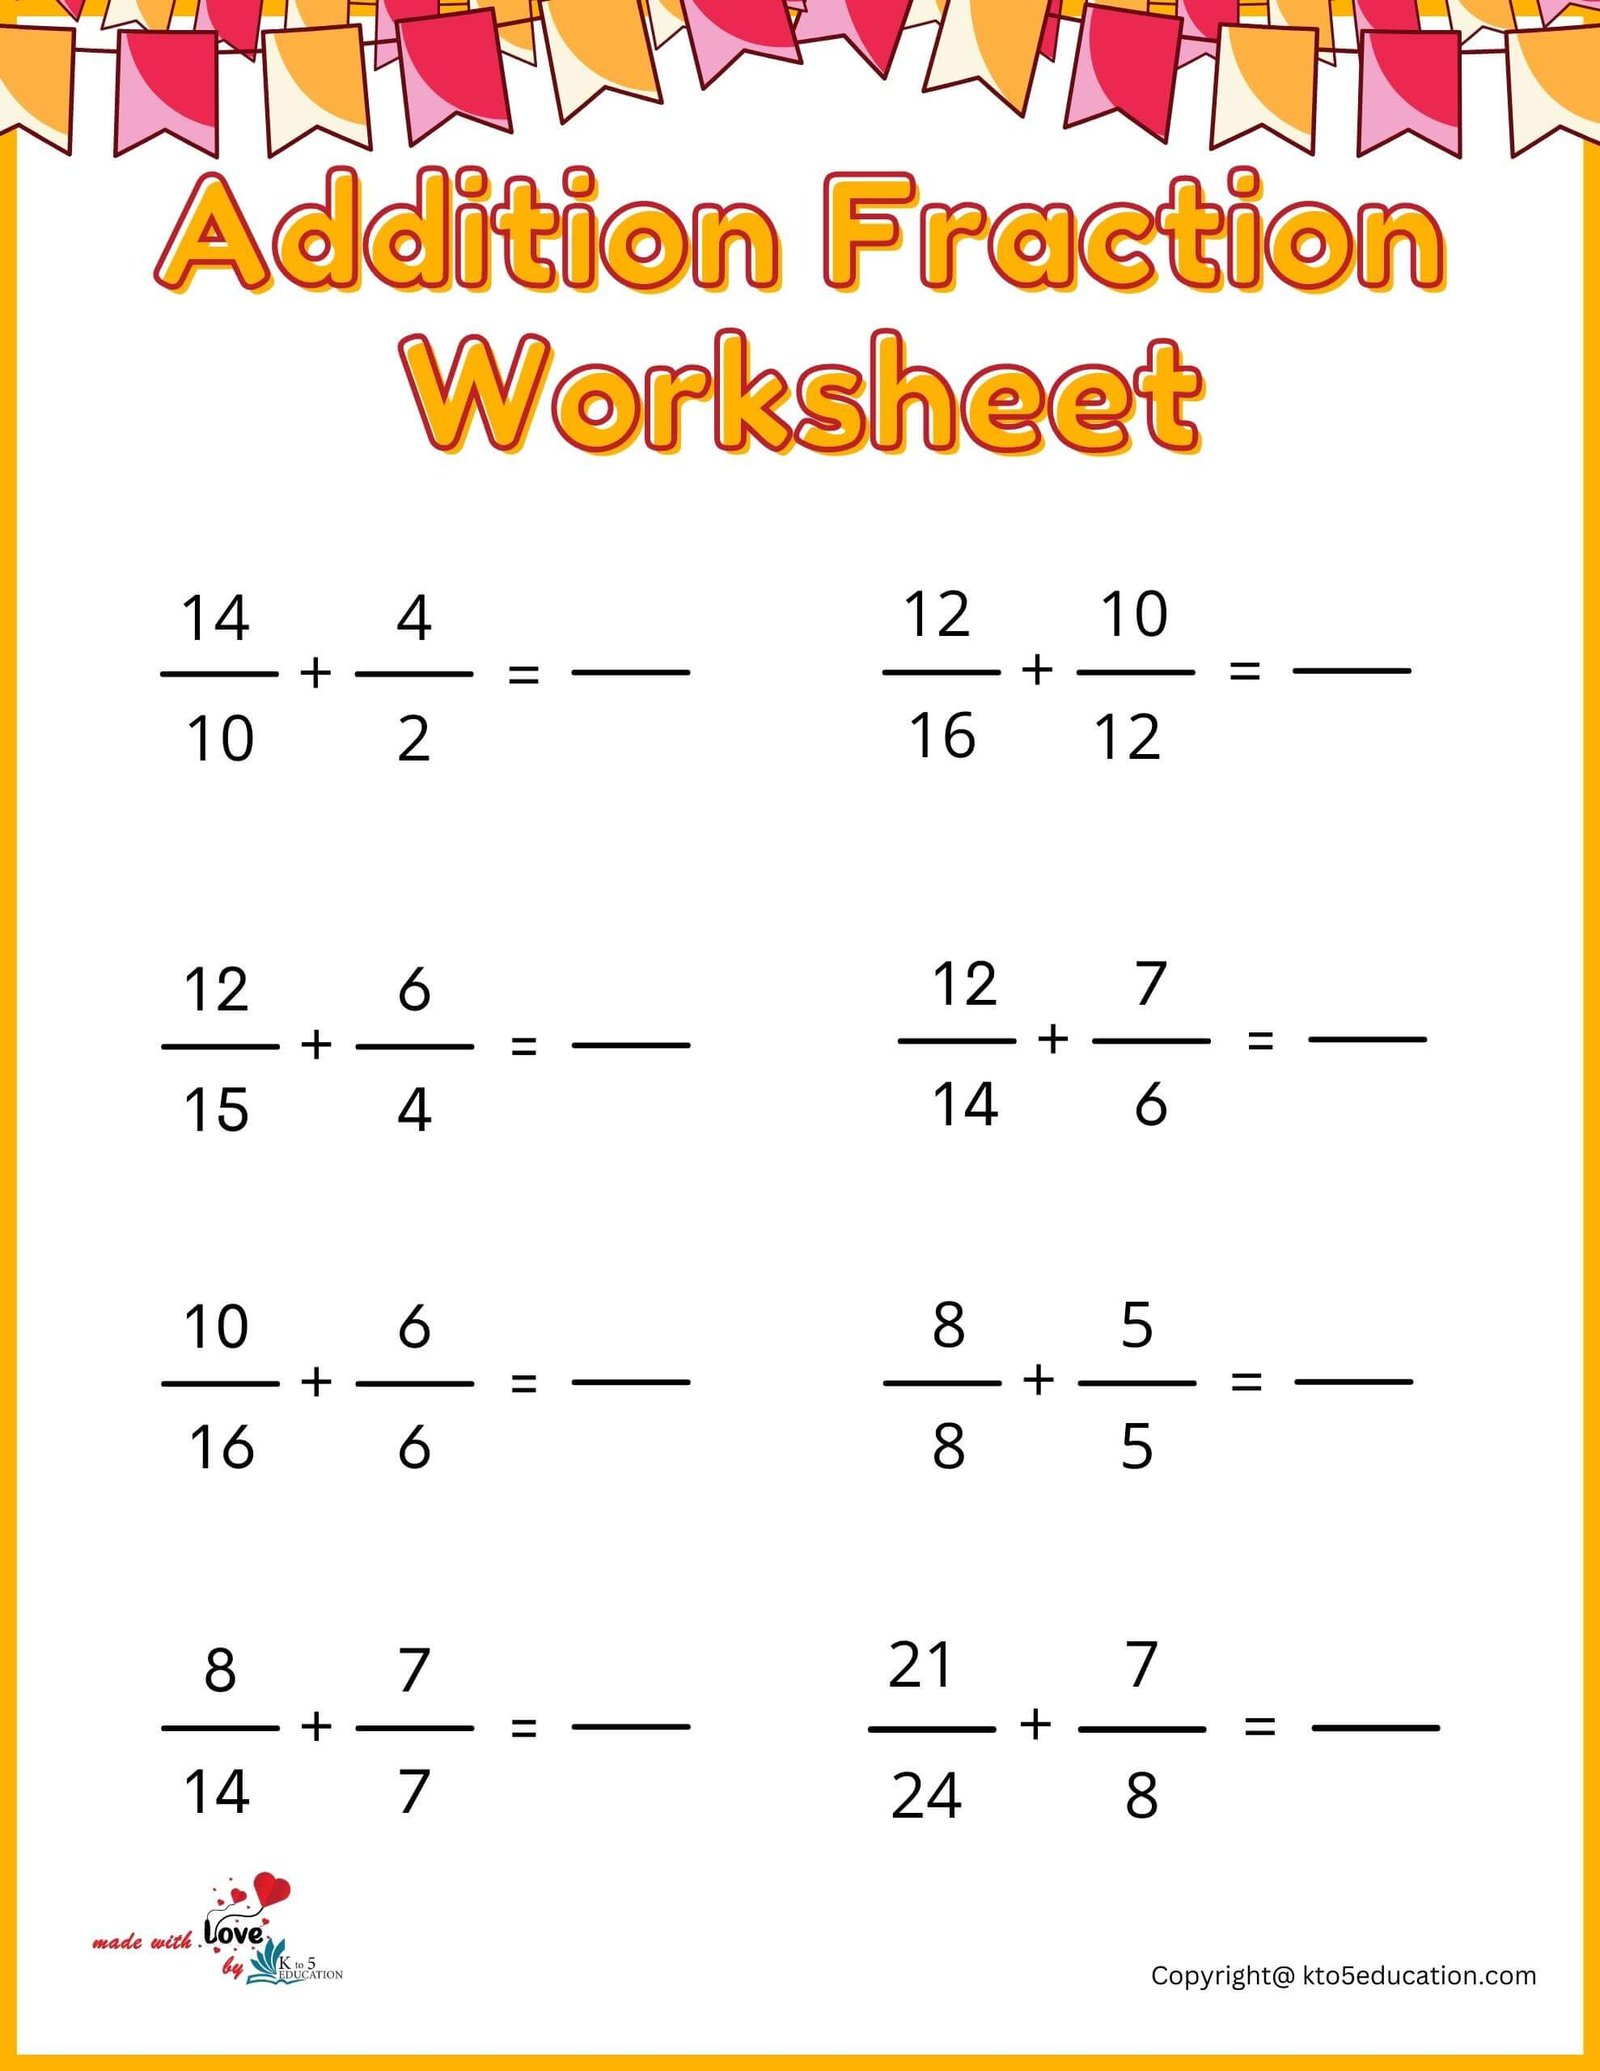 Addition Fraction Worksheet For Fifth Grade